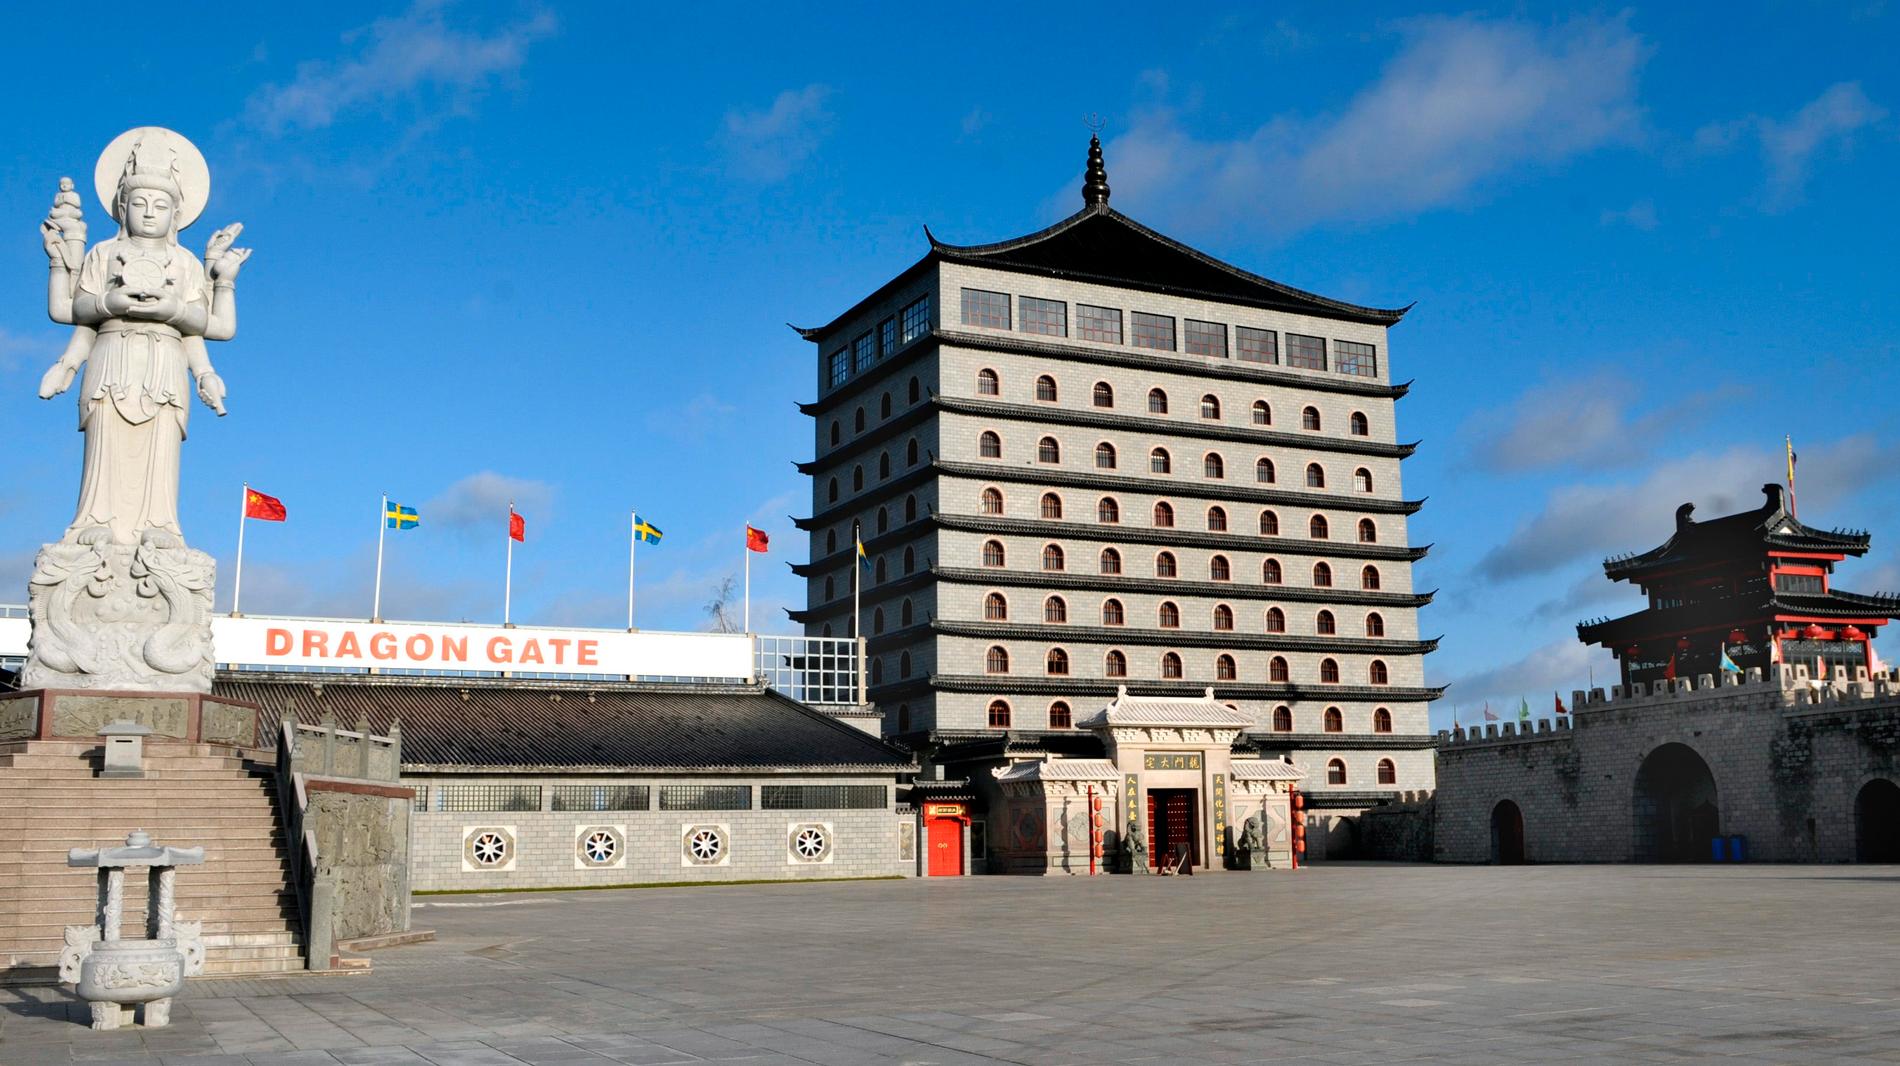 Det tidigare hotellet byggdes om till kinesiskt kulturcentrum. 